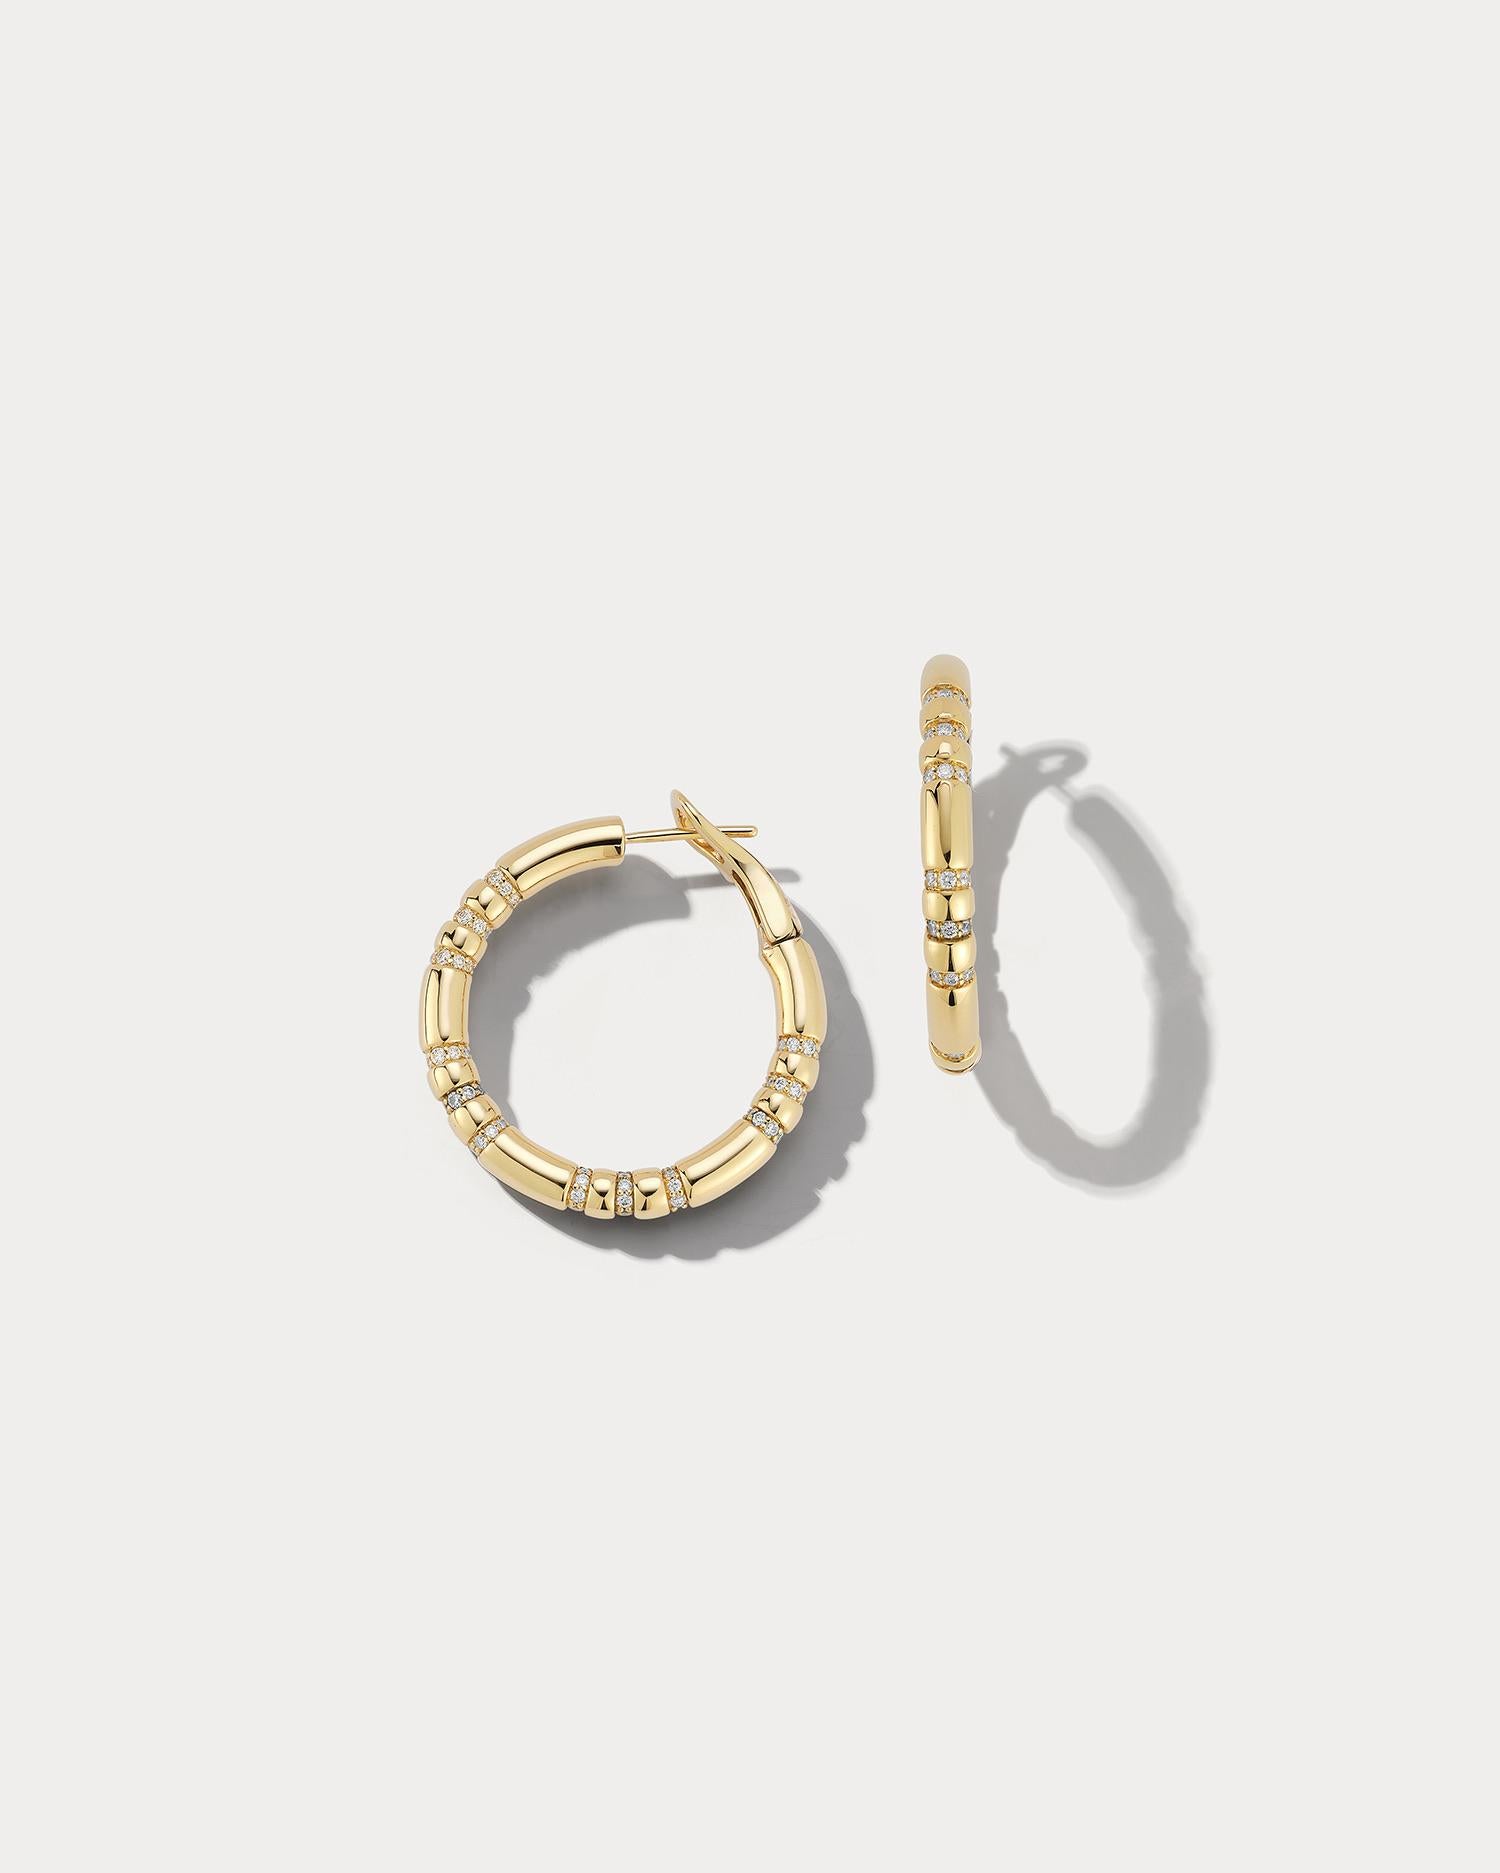 Ces charmantes boucles d'oreilles sont fabriquées en or jaune 18 carats et présentent des accents de 1,56 carats de diamants éblouissants. Les anneaux sont de petite taille, ce qui les rend parfaits pour être portés tous les jours ou pour ajouter